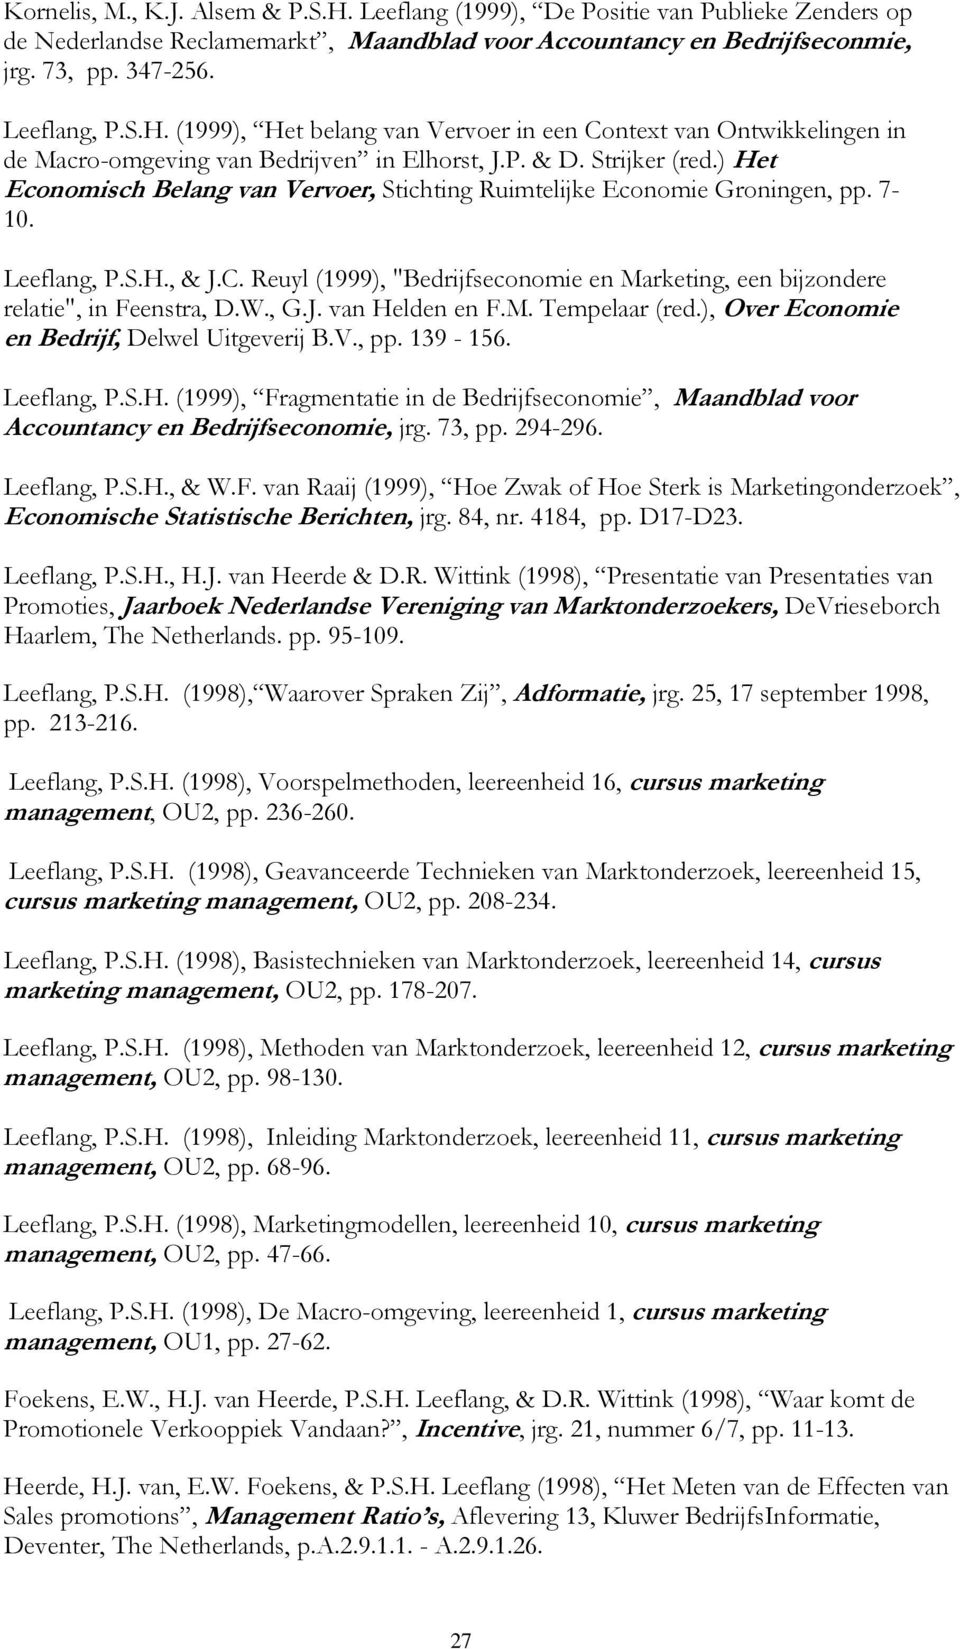 Reuyl (1999), "Bedrijfseconomie en Marketing, een bijzondere relatie", in Feenstra, D.W., G.J. van Helden en F.M. Tempelaar (red.), Over Economie en Bedrijf, Delwel Uitgeverij B.V., pp. 139-156.